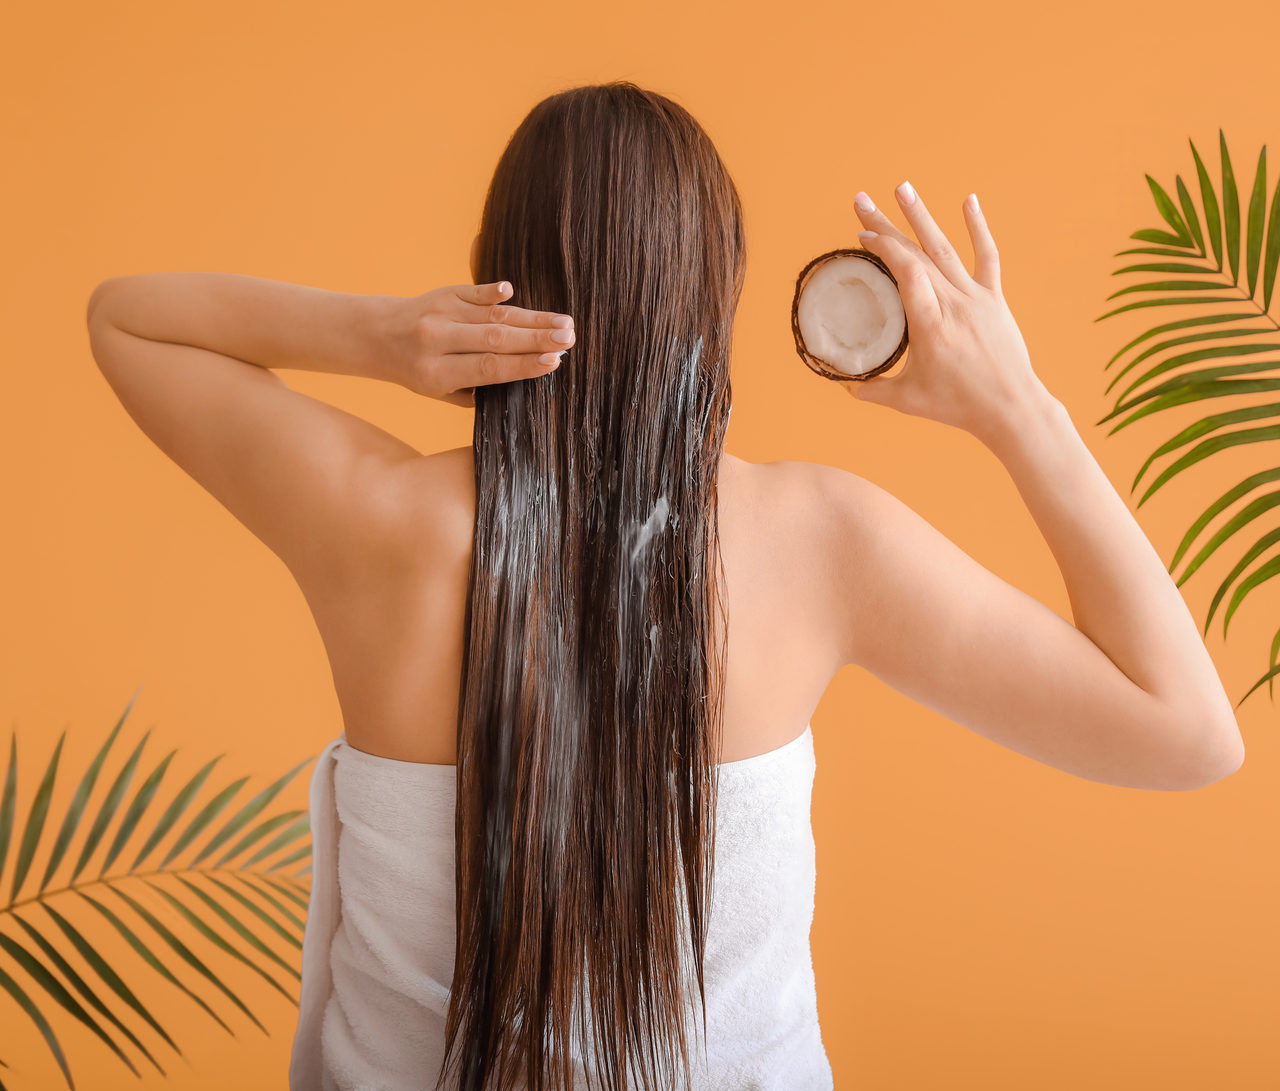 На какие волосы наносить кокосовое масло на чистые или грязные волосы